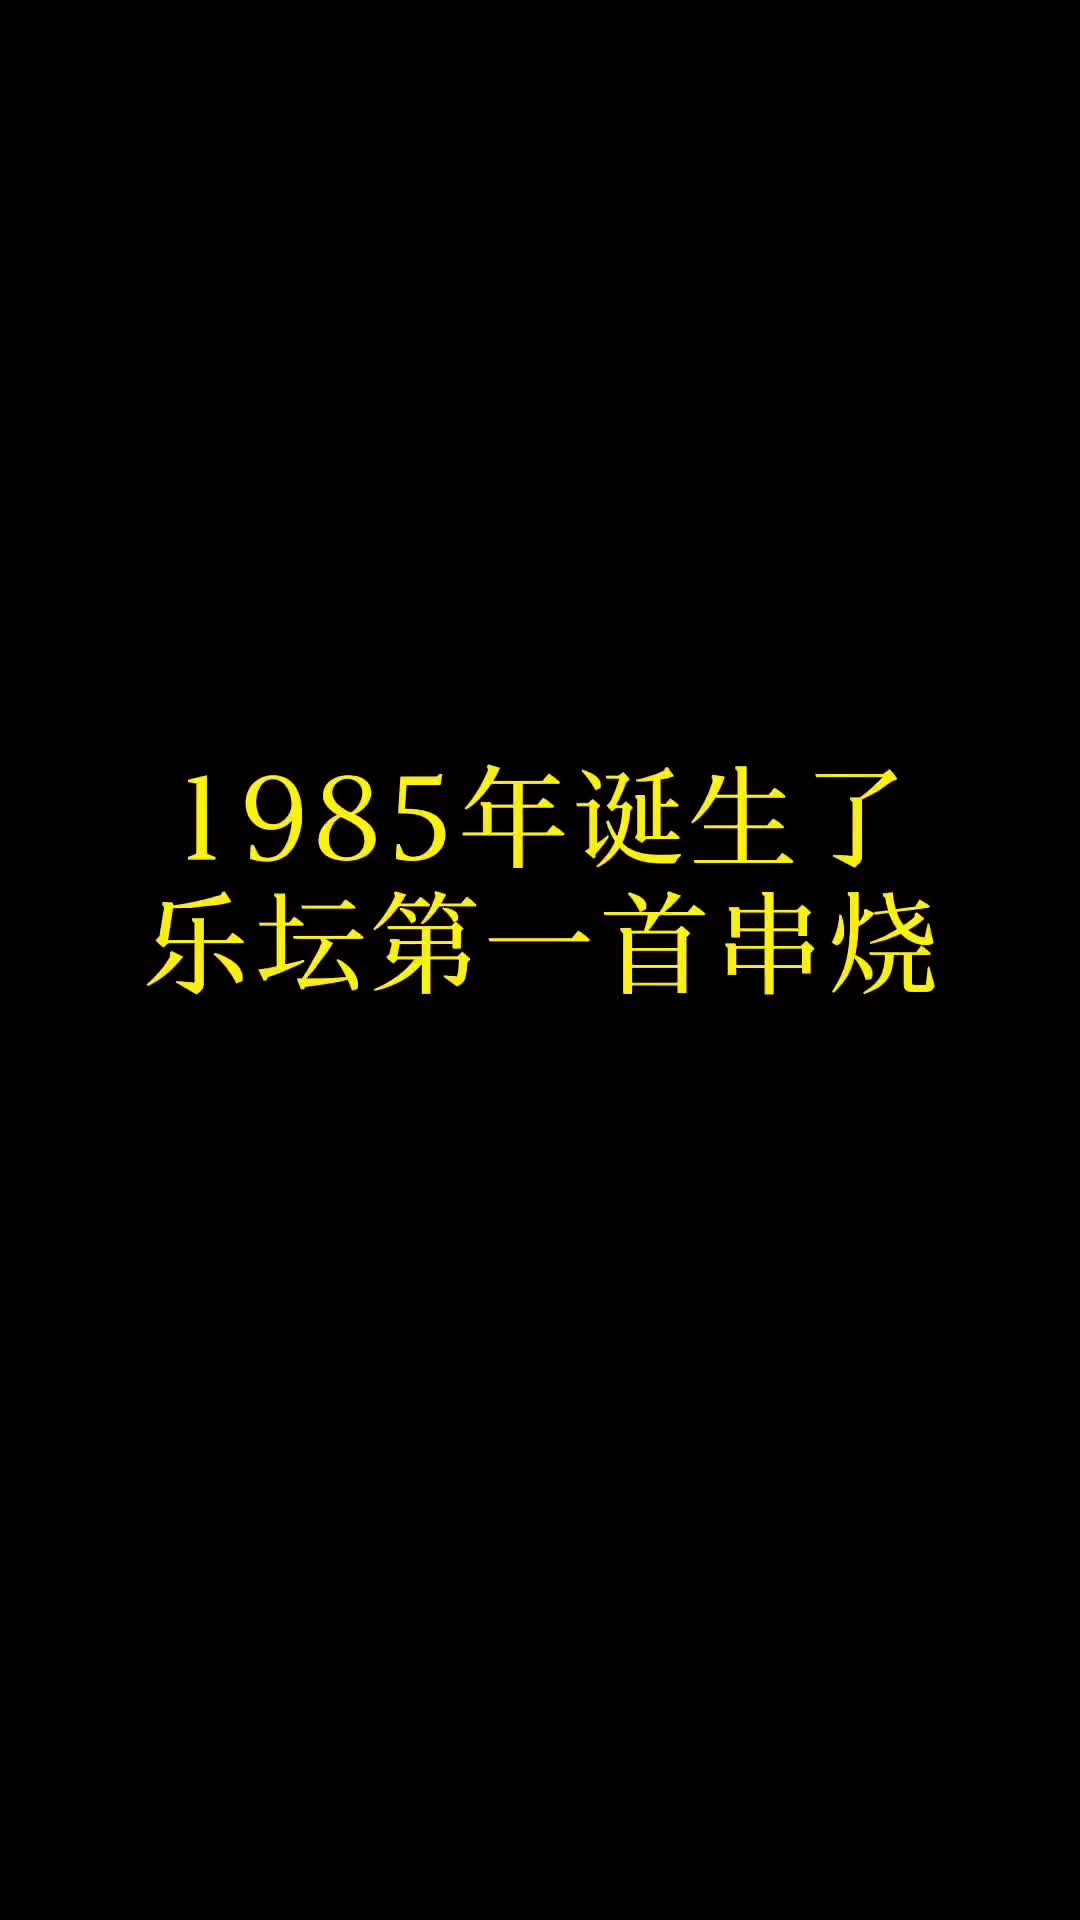 那年诞生史上第一首串烧歌曲，这气场也只有林子祥能做到了#粤语经典 #林子祥 #许冠杰#张国荣 #音乐推荐